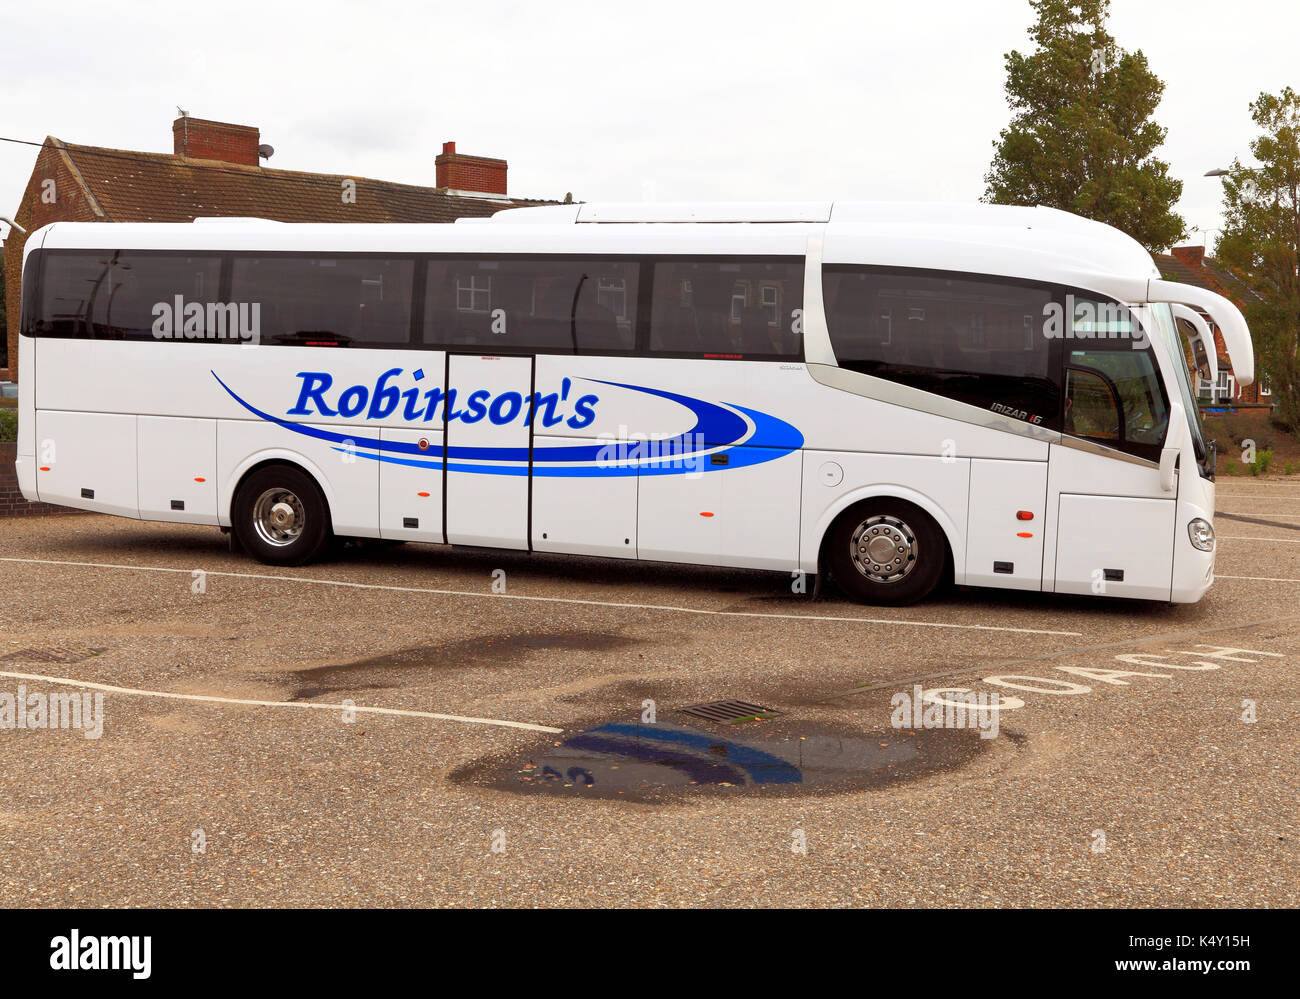 Robinson's Coaches, Trainer, Tagesausflüge, Reise, Ausflug, Ausflüge, Reisen unternehmen, Unternehmen, Urlaub, Urlaub, Verkehr, England, Großbritannien Stockfoto